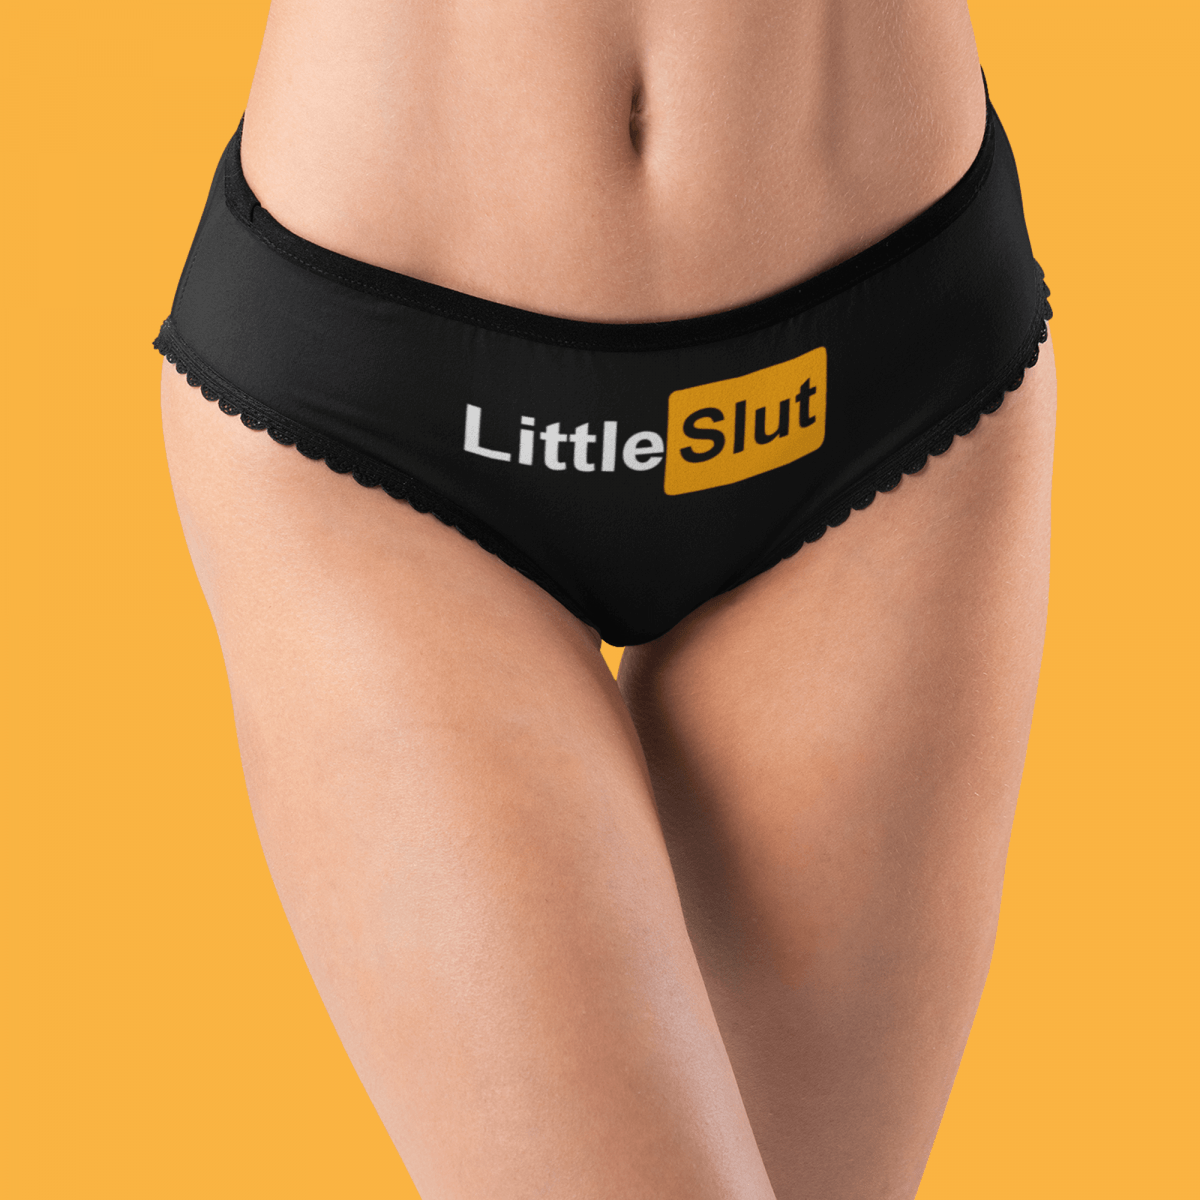 Little-Slut-Panties-Filthy-BDSM-Kinky-Panties-1